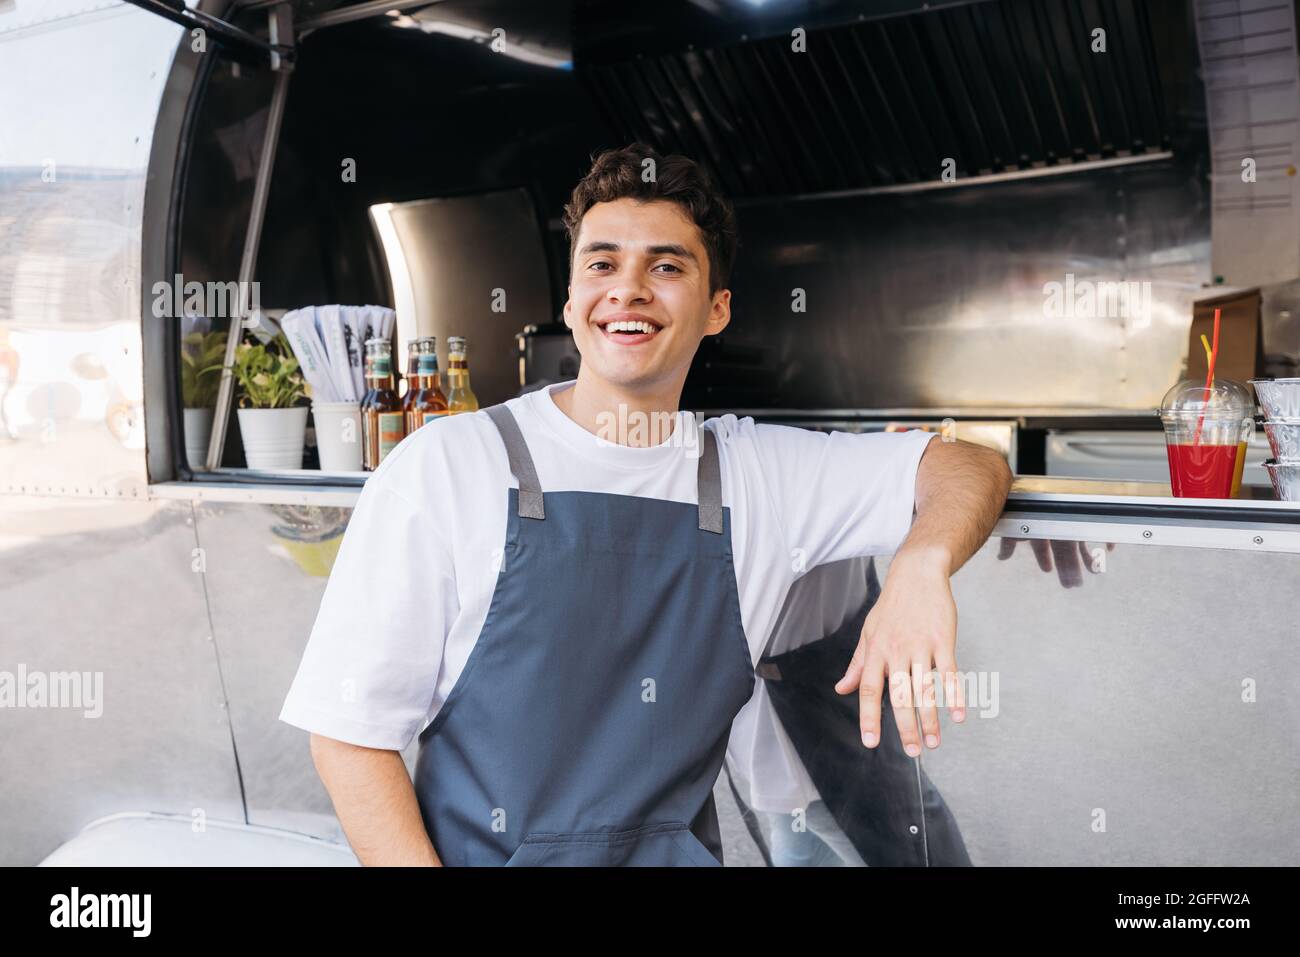 Porträt eines glücklichen Besitzers eines Food-Trucks. Typ aus dem Nahen Osten im Vorfeld, der sich auf einen Food Truck lehnte und die Kamera ansah. Stockfoto